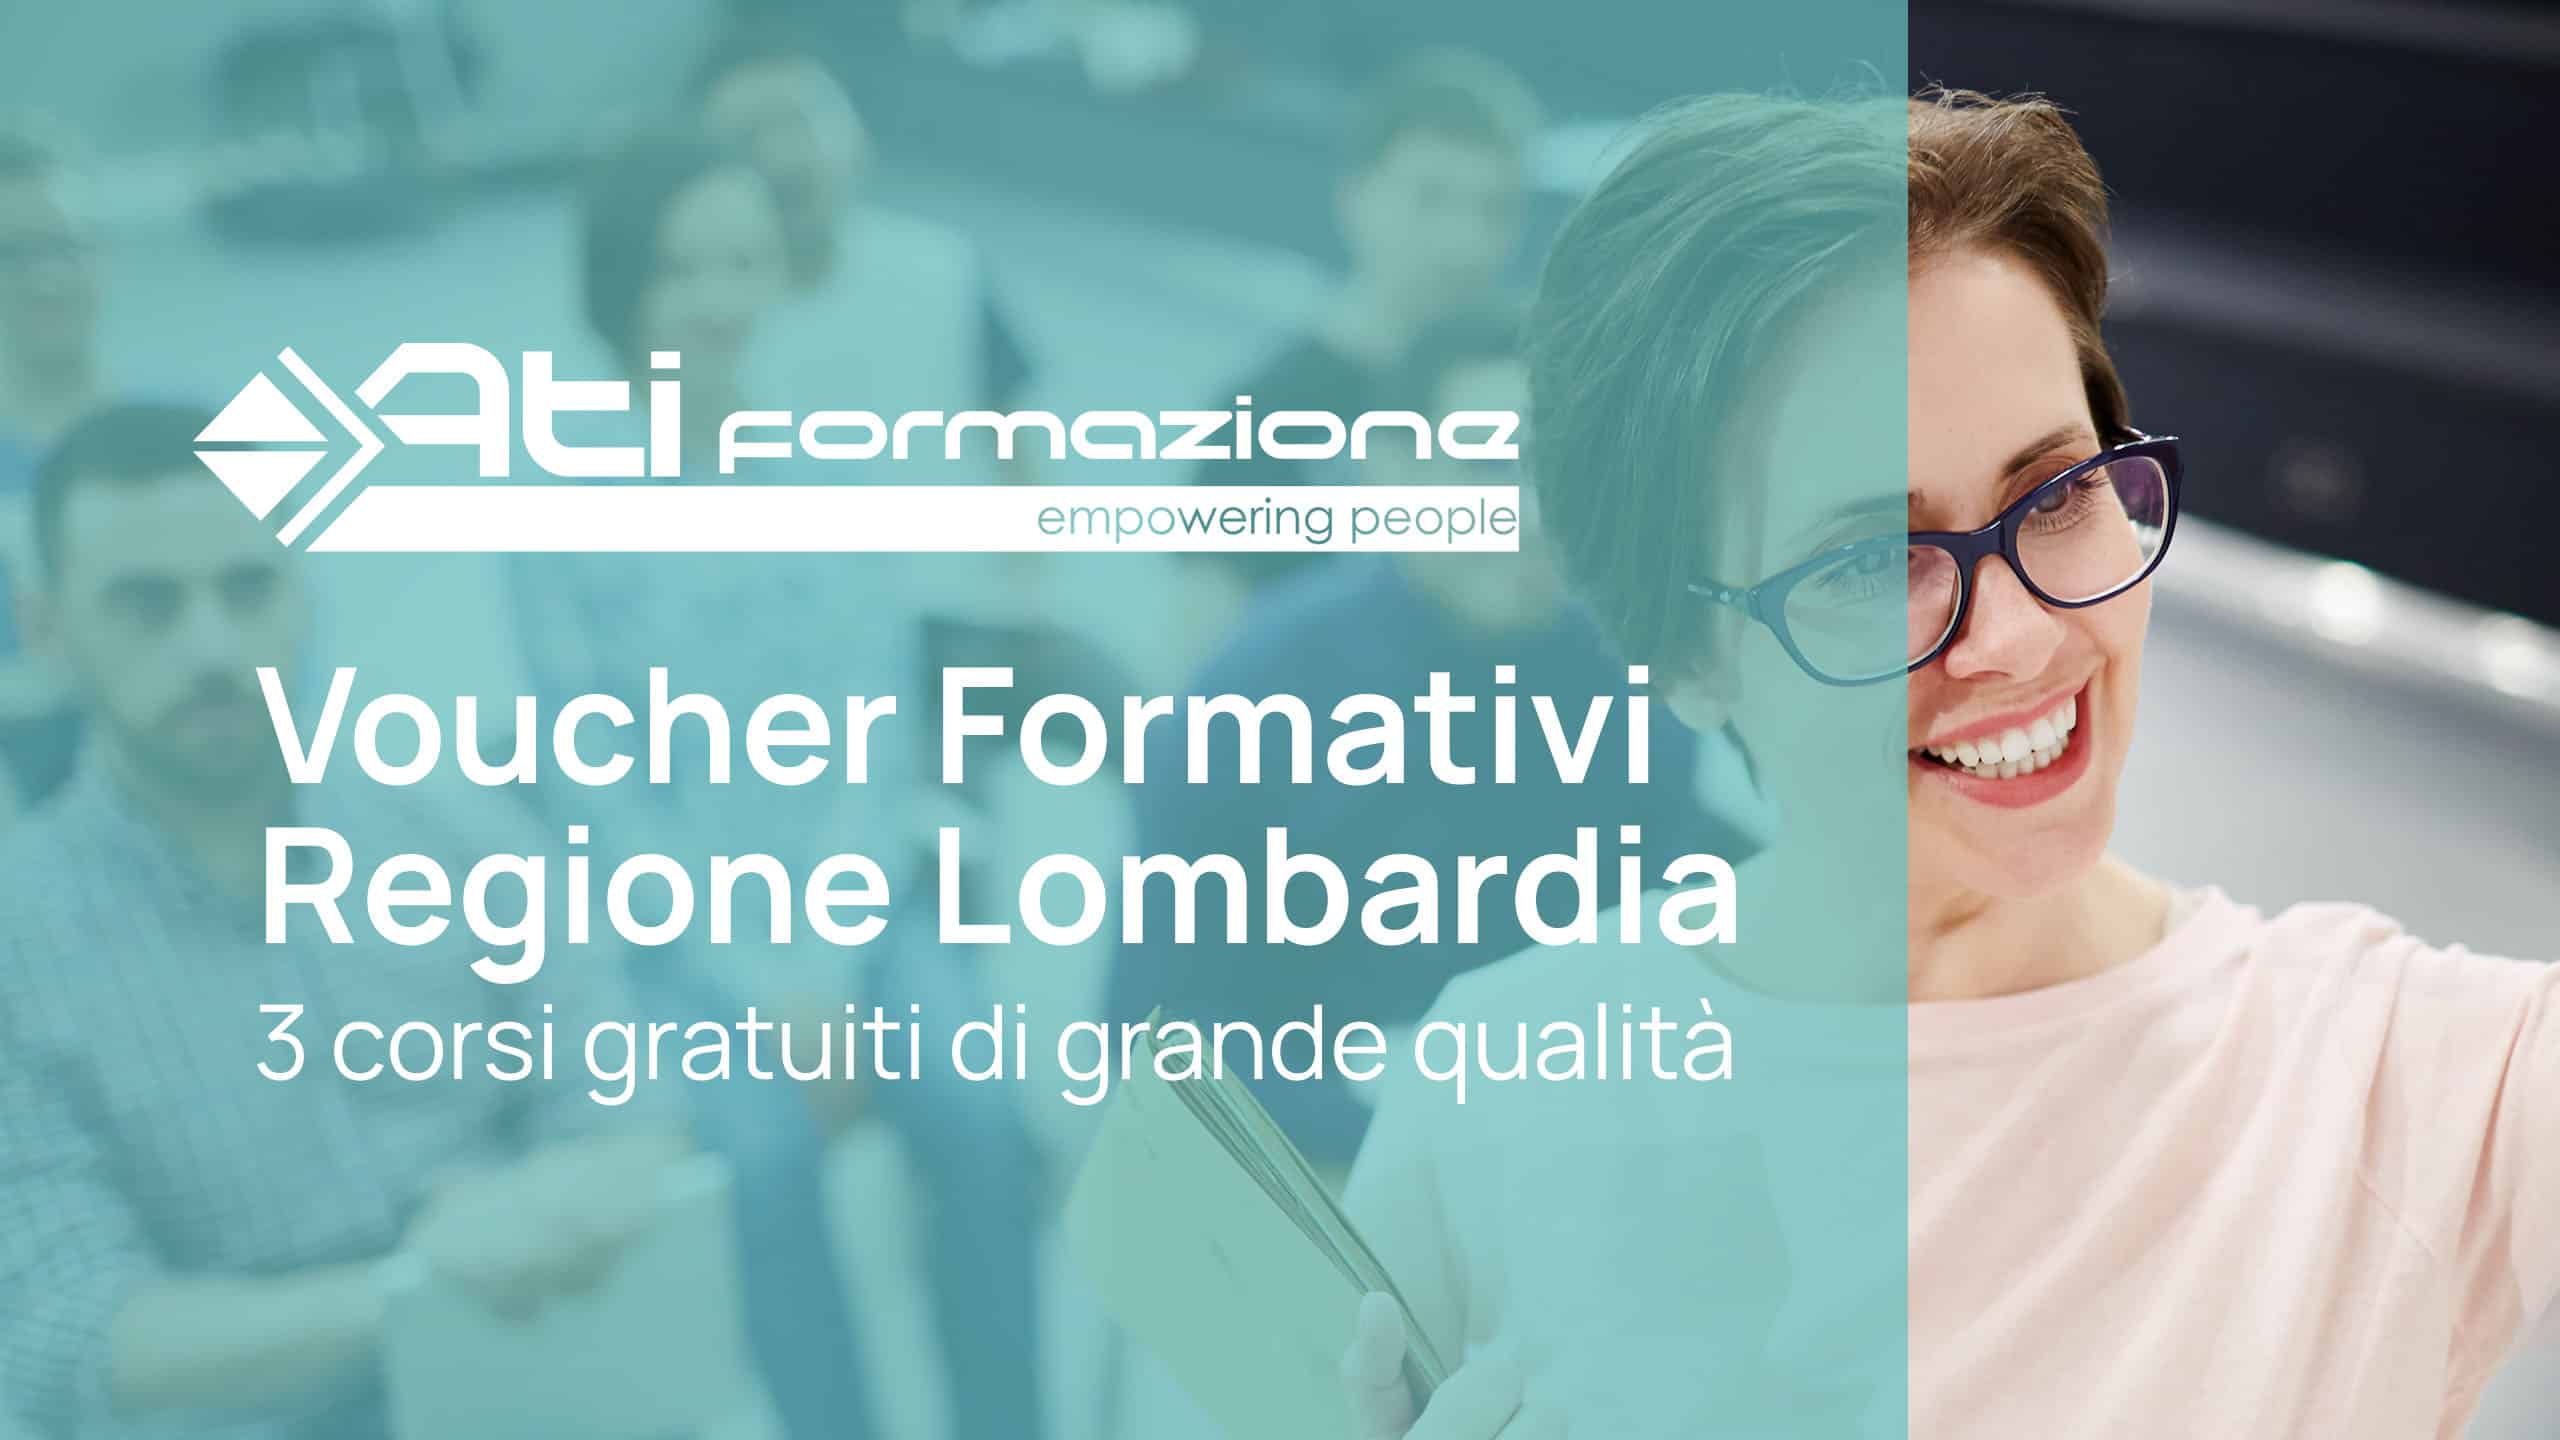 Voucher Formativi Regione Lombardia: 3 corsi gratuiti di grande qualità e straordinaria efficacia per i tuoi collaboratori